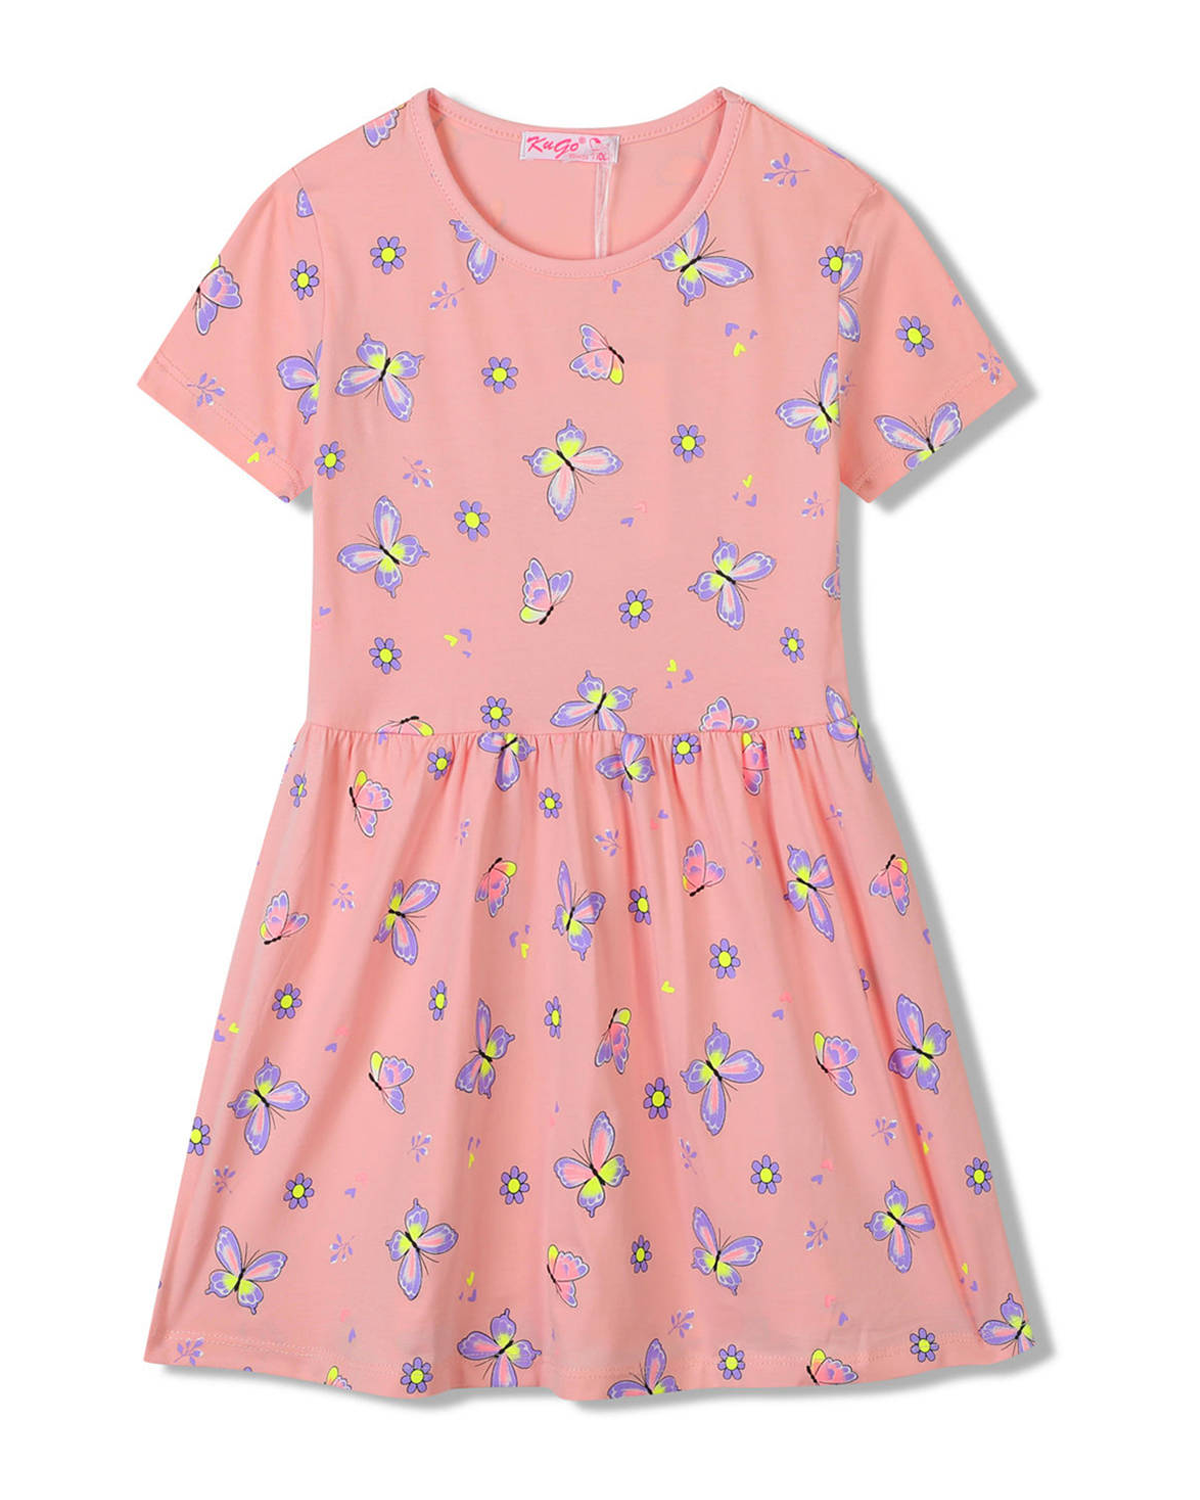 Dívčí šaty - KUGO SH3516, lososová Barva: Lososová, Velikost: 104